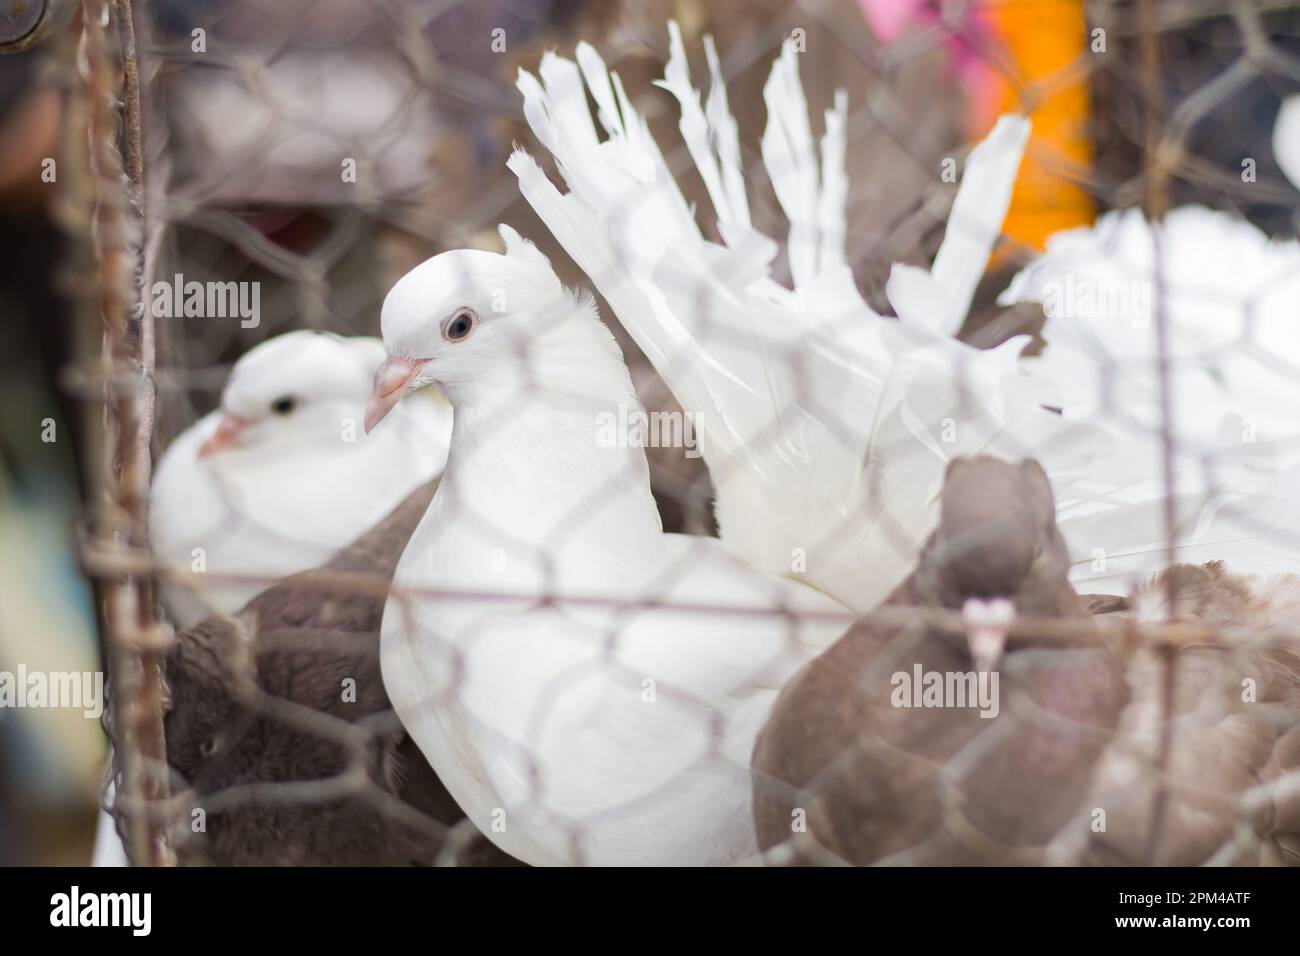 Pigeons de queue de fanion de couleur blanche et brune conservés dans une cage pour la vente dans un magasin/marché d'animaux de compagnie en Inde. Cette race de pigeons fantaisie est connue sous le nom de pigeo lokka Banque D'Images